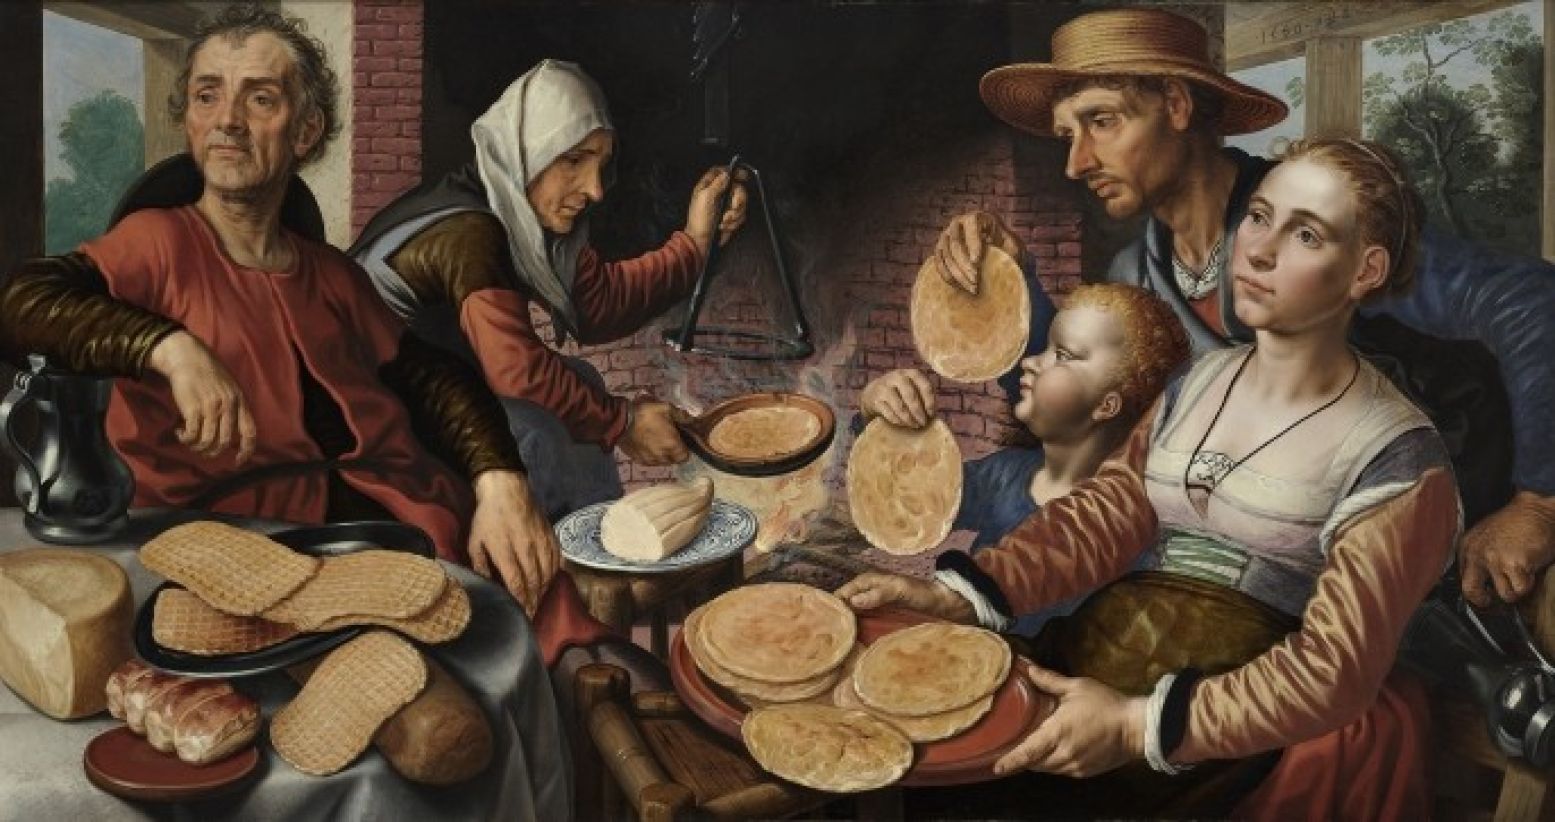 Pieter Aertsen, Pannenkoekenbakkerij, 1560. Paneel, 87 x 169,3 cm. Collectie Museum Boijmans Van Beuningen, Rotterdam.